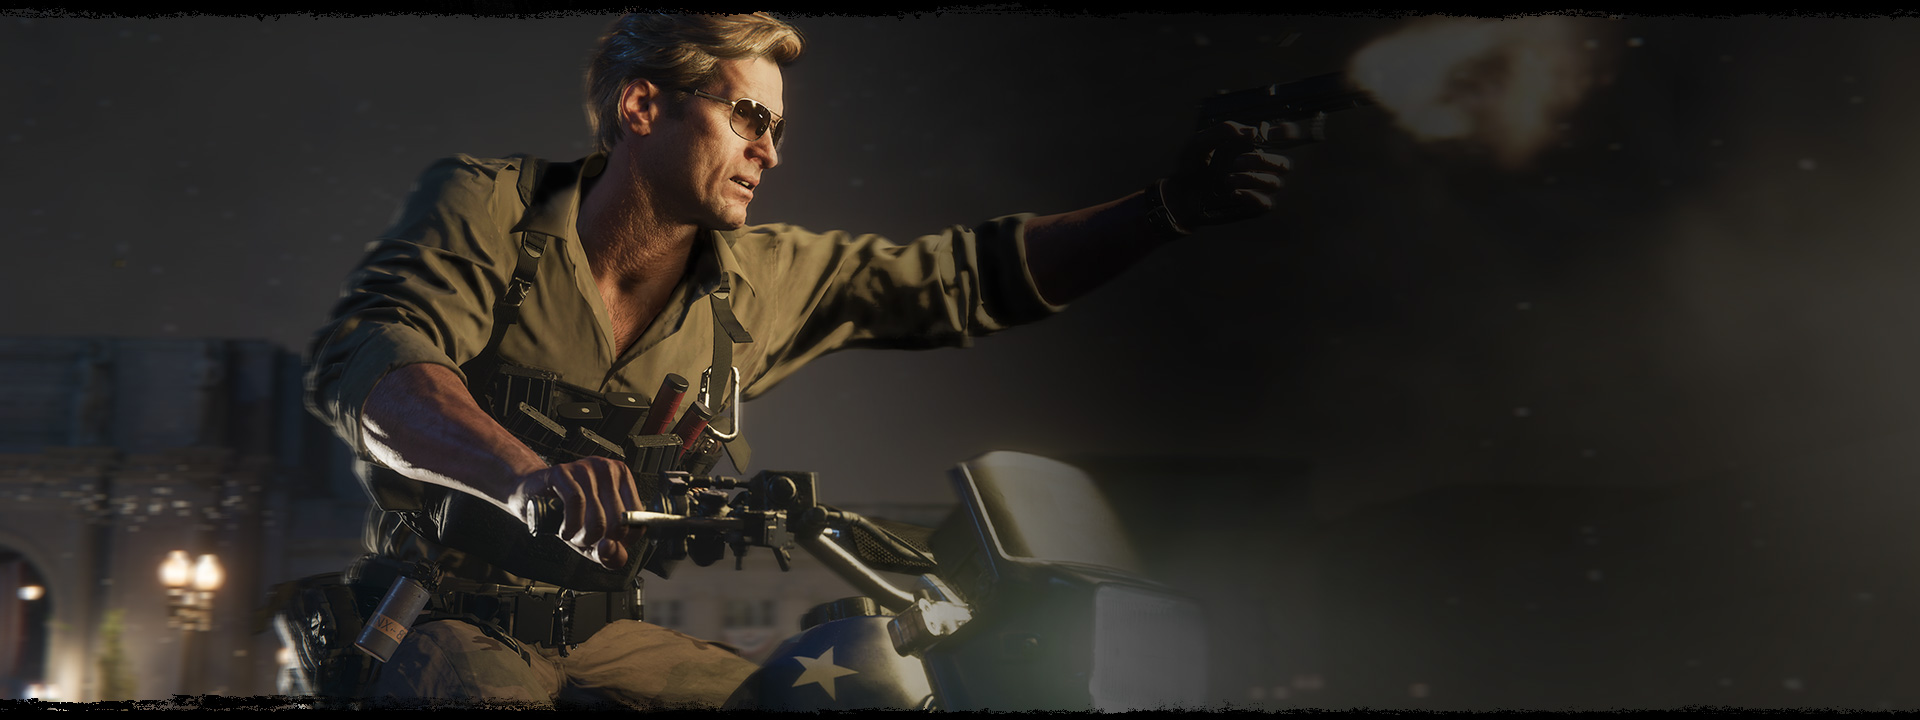 Un personnage tire avec une arme de poing sur une moto ornée d’un drapeau américain.